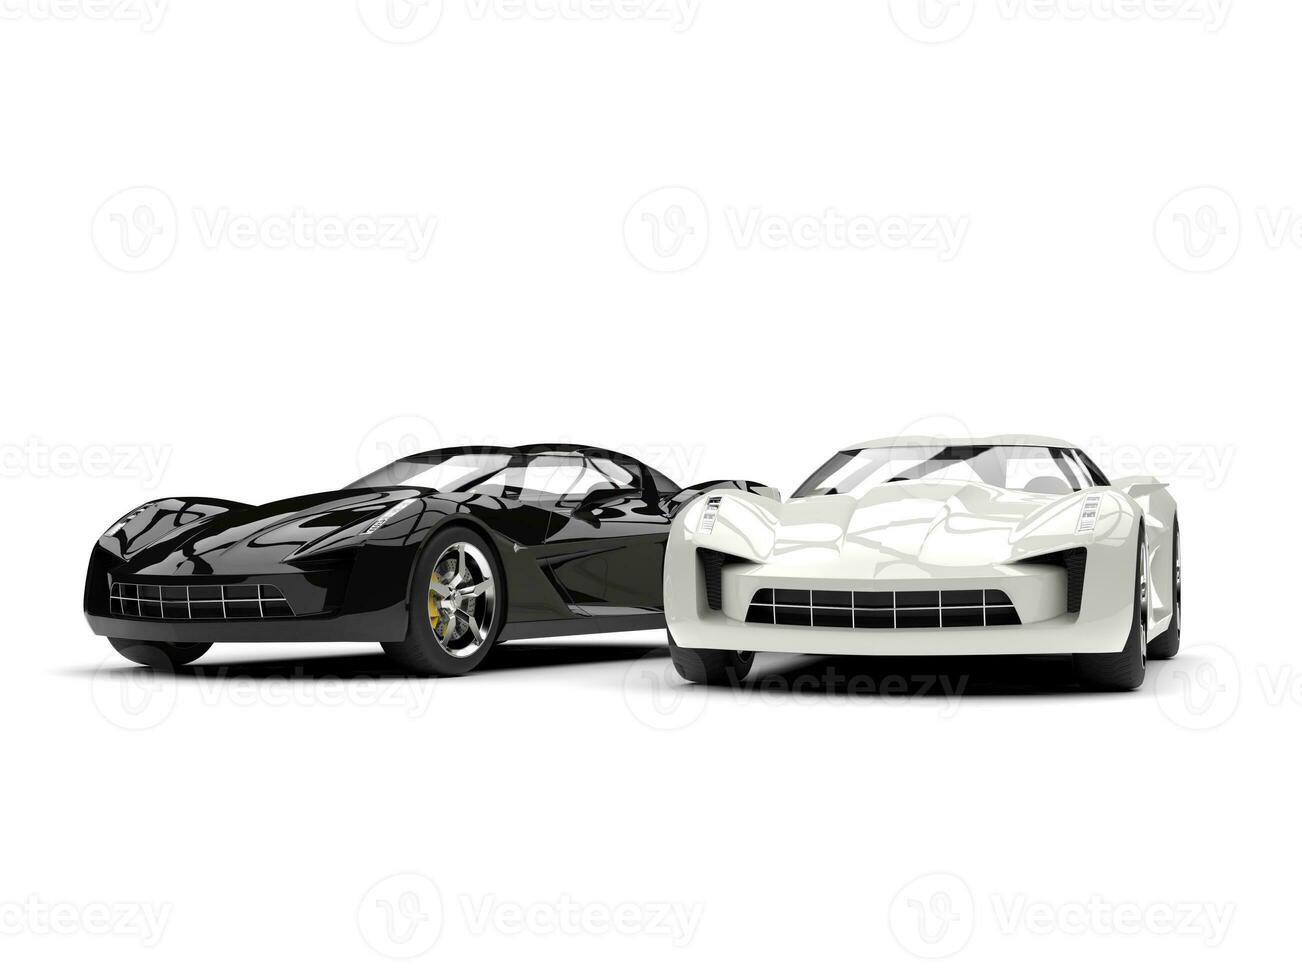 noir et blanc super des sports concept voitures photo